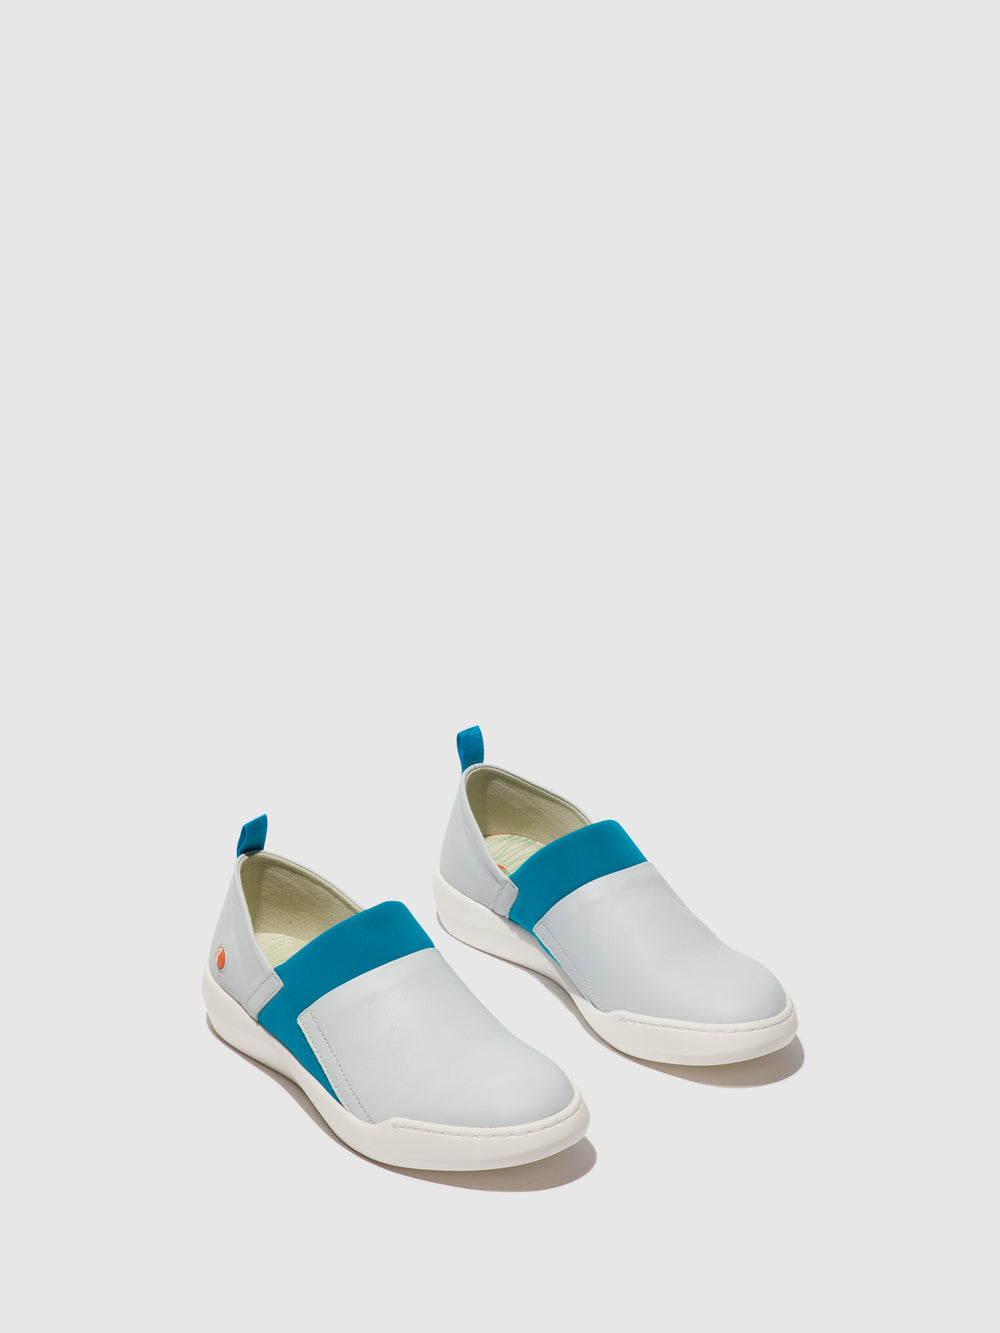 Sapatos Slip-on BAJU709 LIGHT BLUE/TURQUOISE